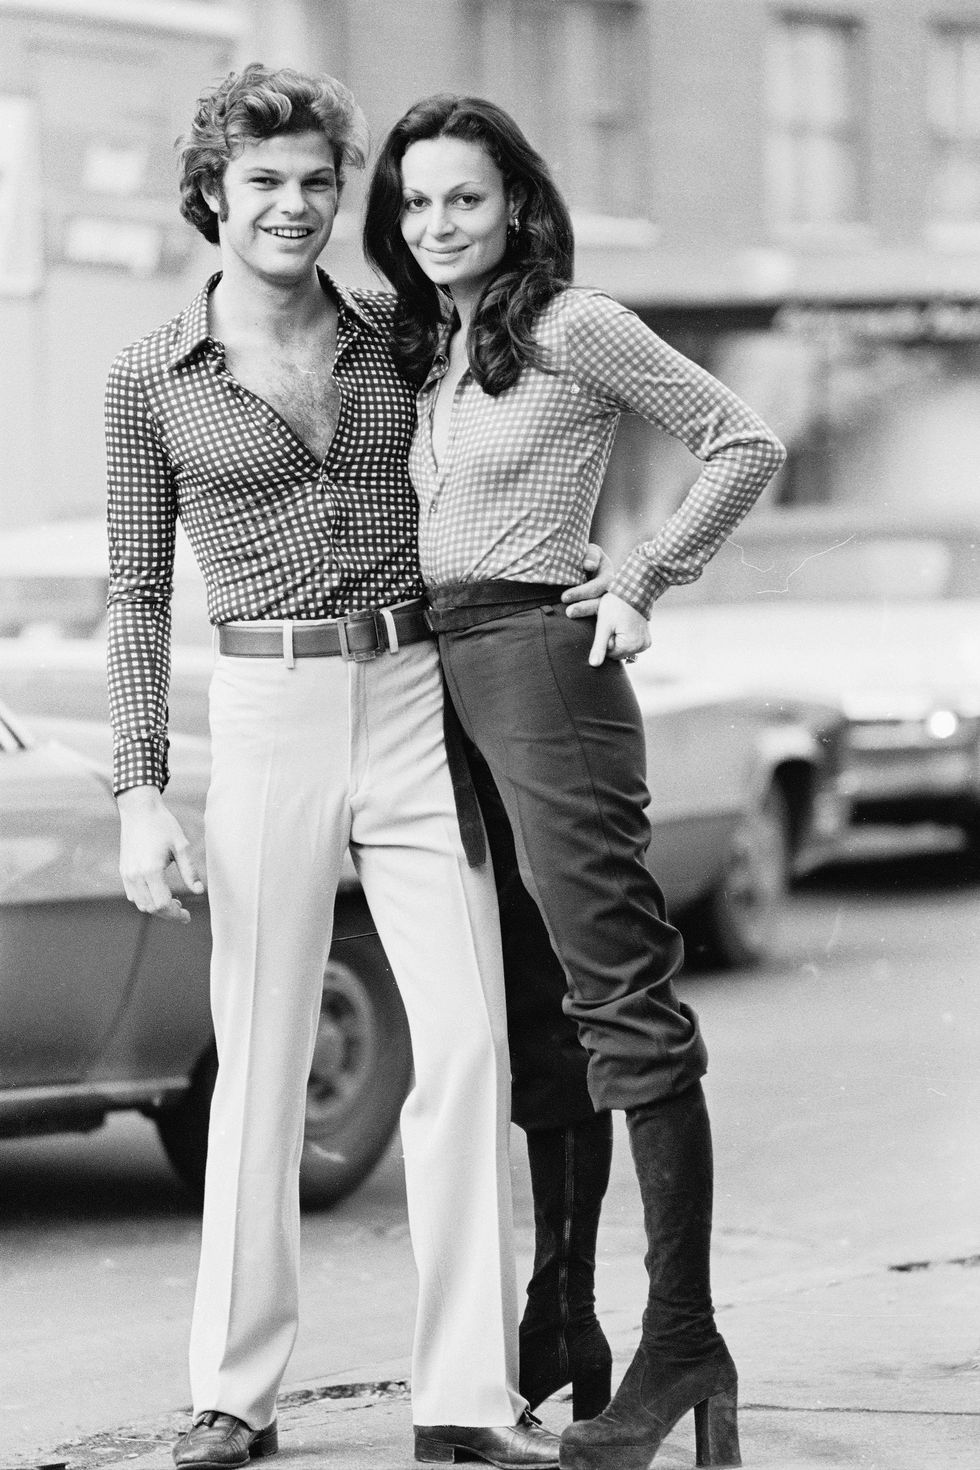 women's fashion of the 70s ideas diane von furstenberg with her husband